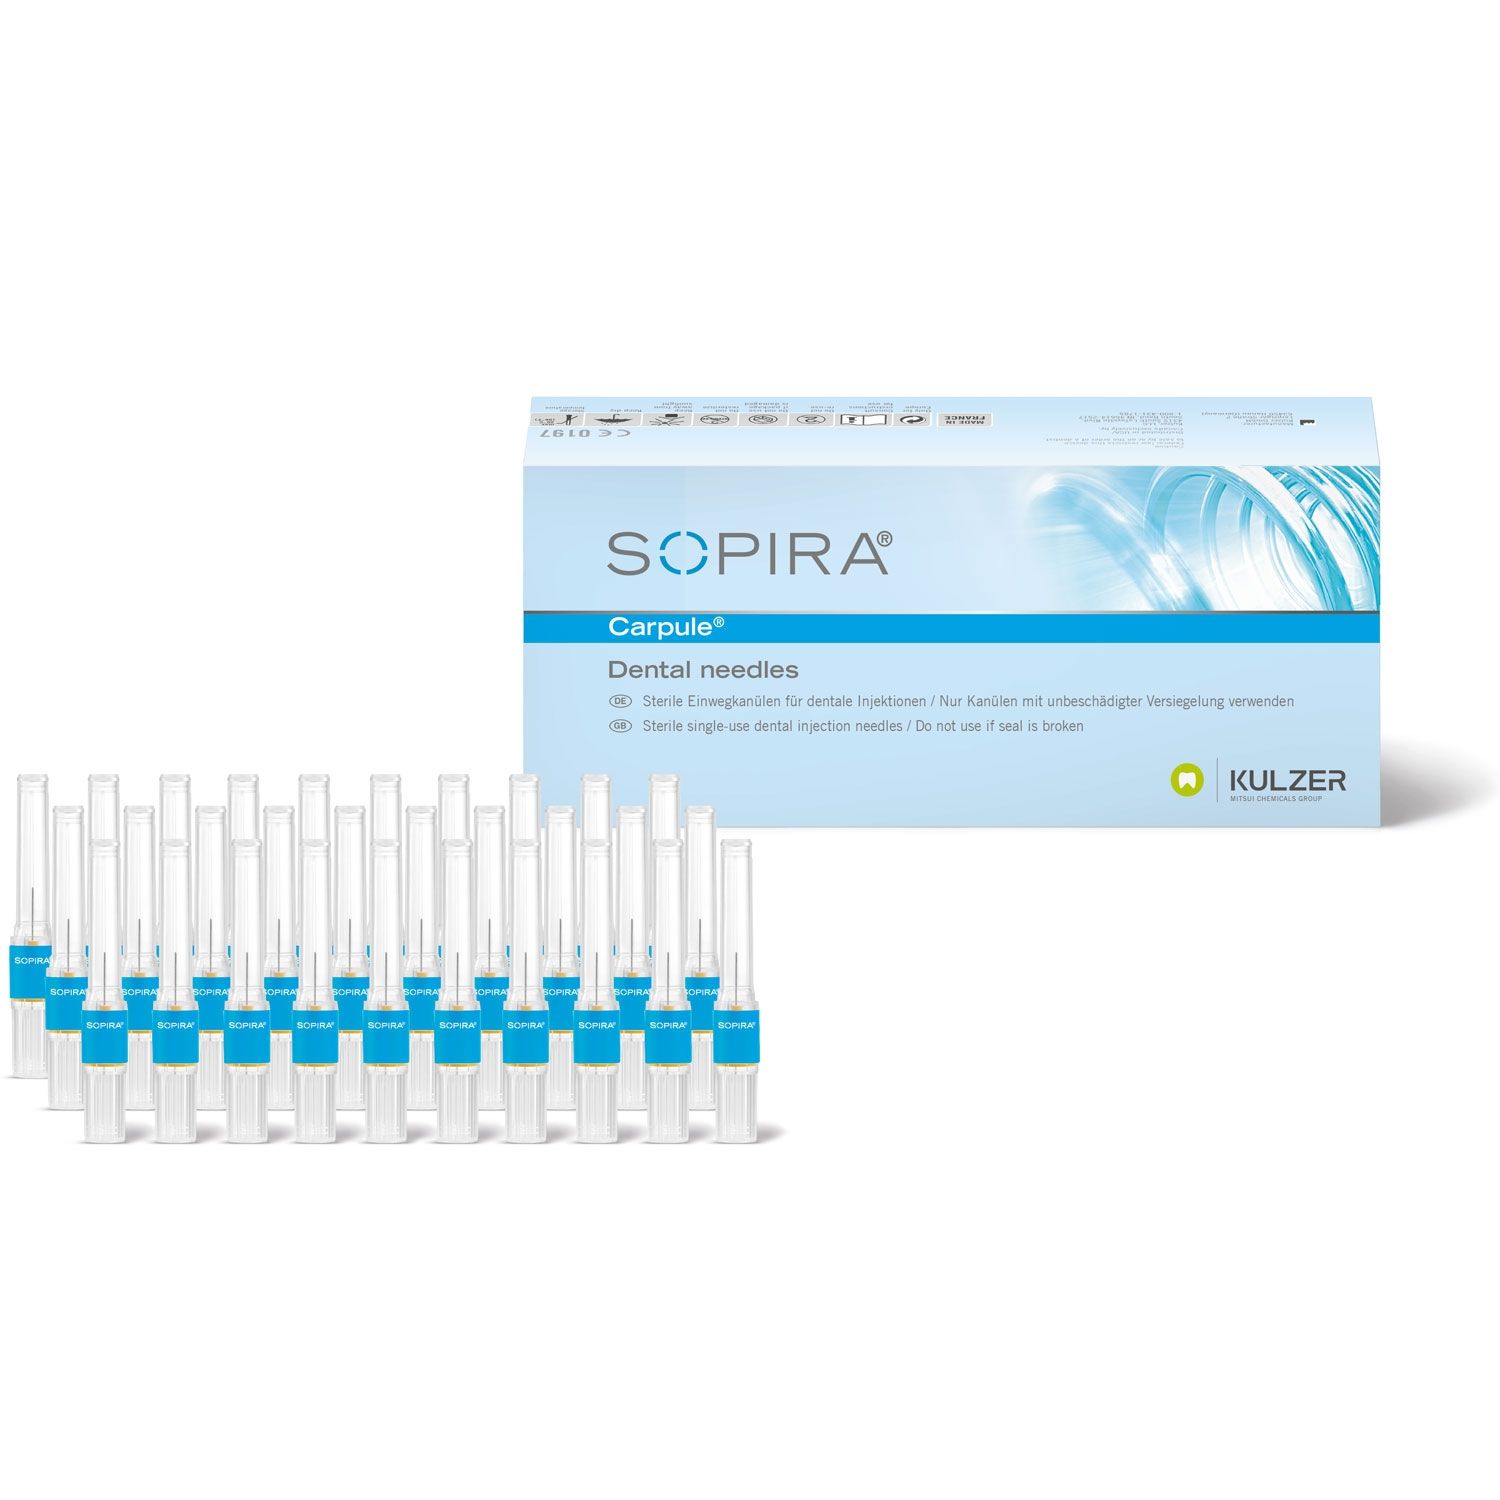 SOPIRA Carpule Needles: 30G Short - 21mm (100)